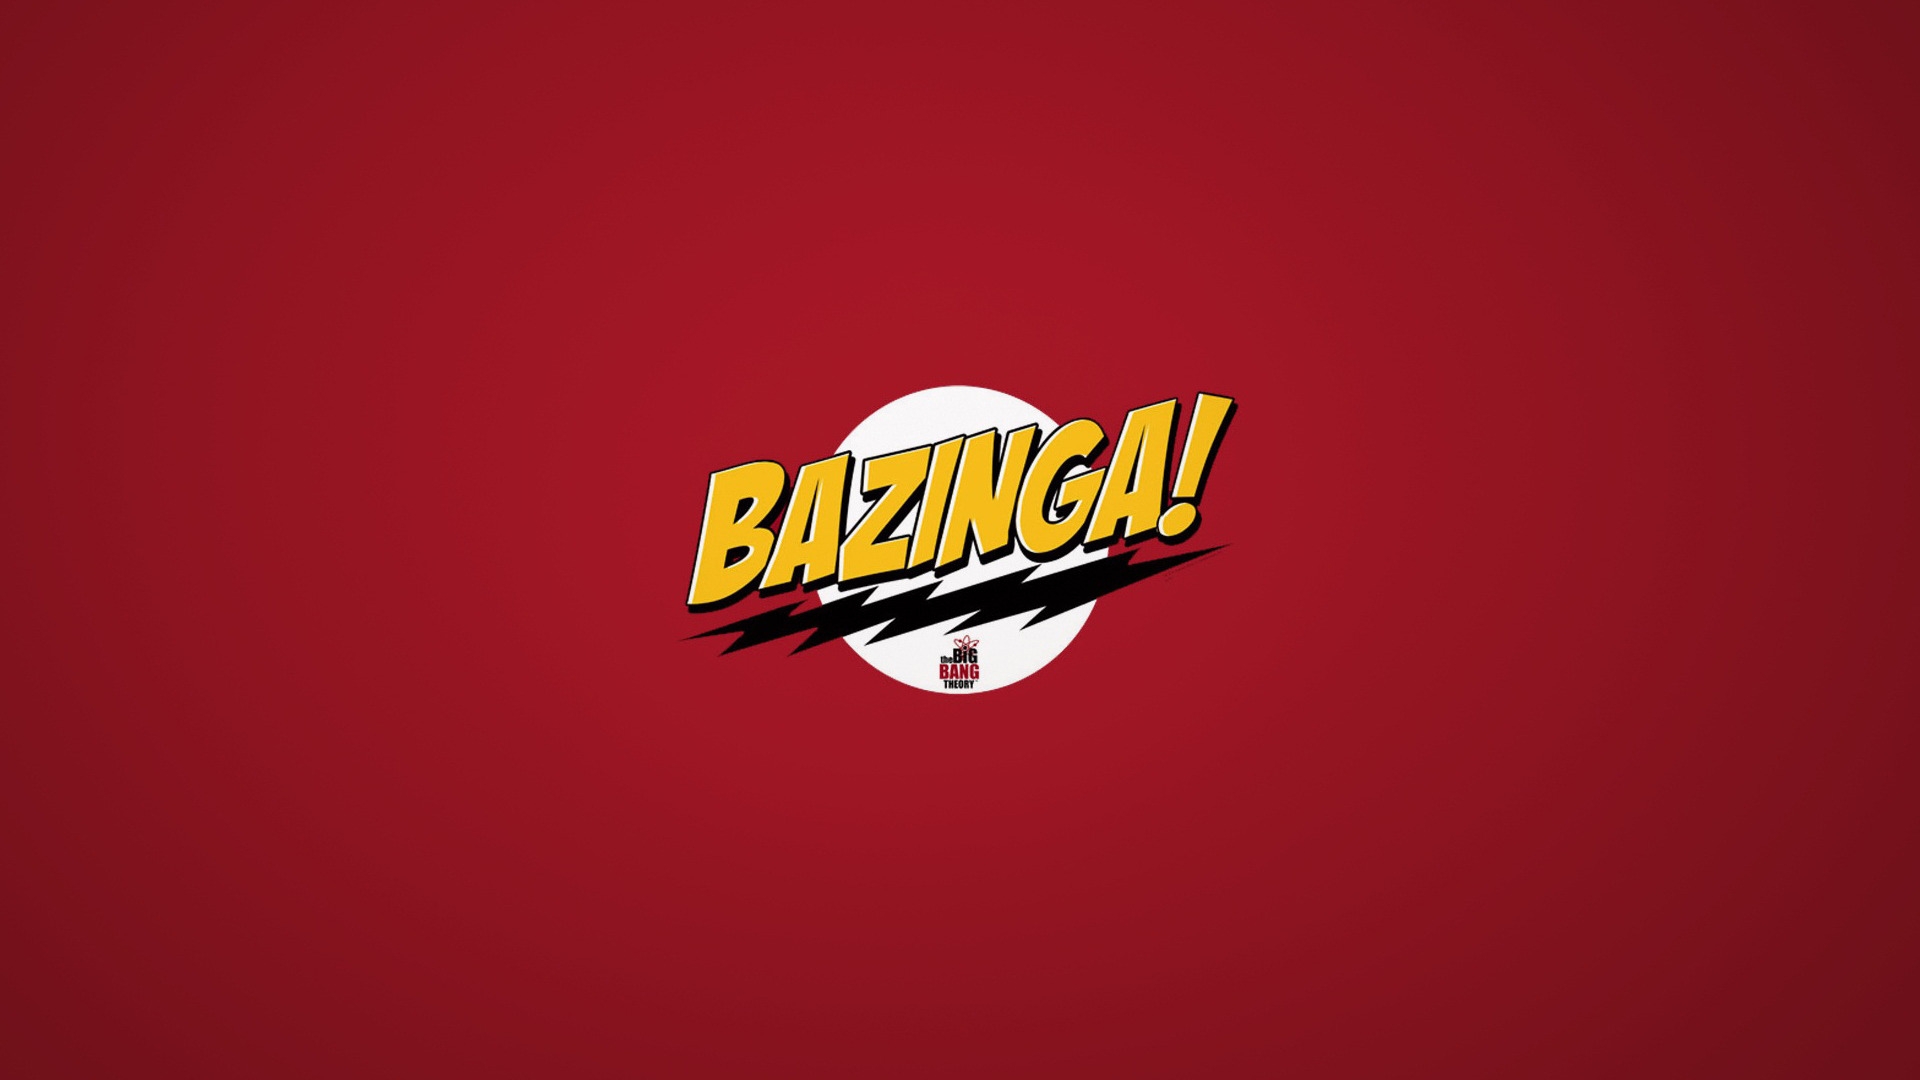 The Big Bang Theory Bazinga for 1920 x 1080 HDTV 1080p resolution